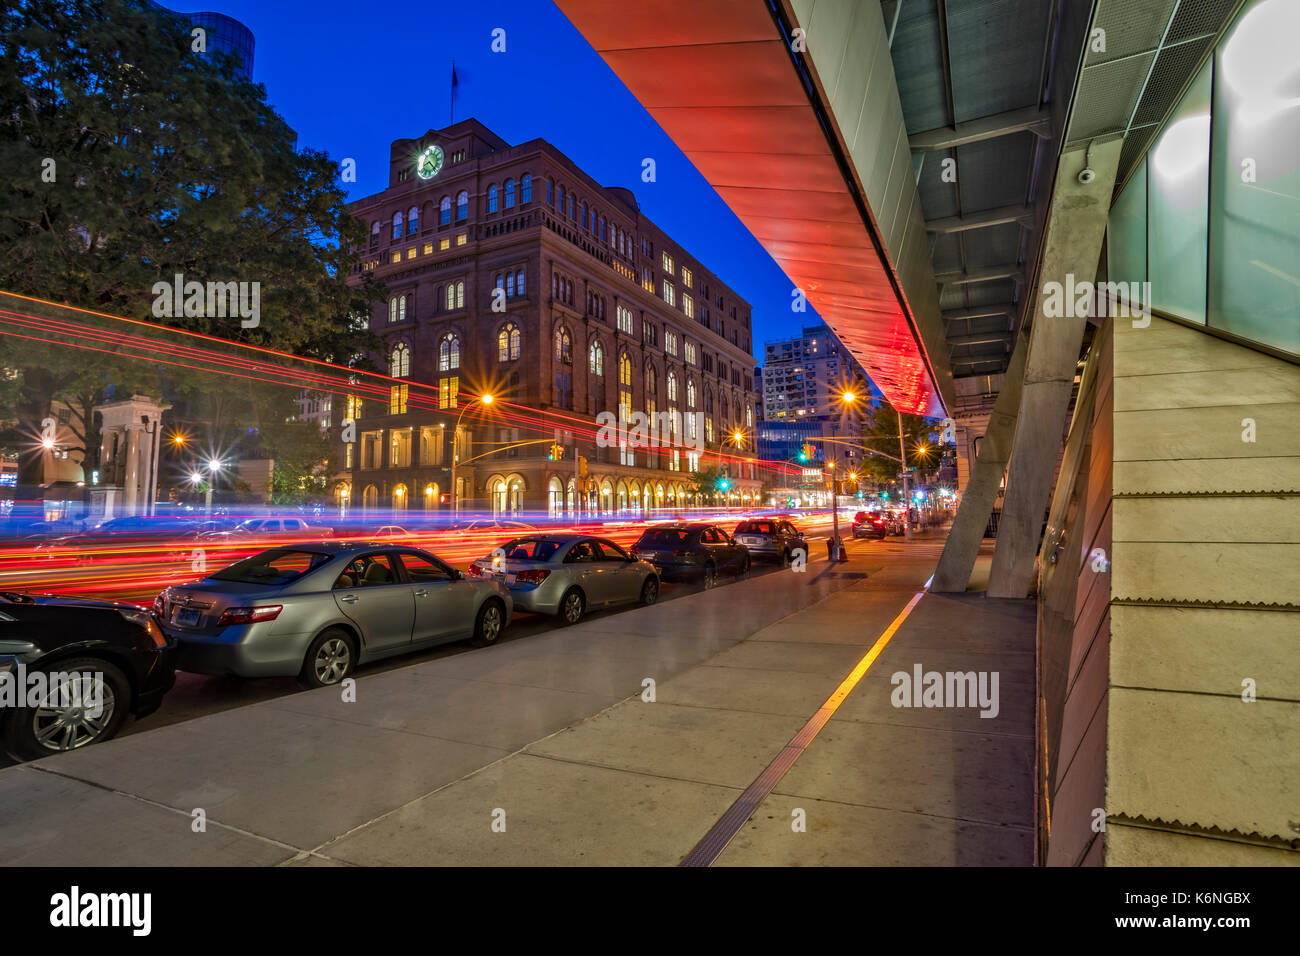 Der Cooper Union NEW YORK CITY - Blick auf das neue und moderne Gebäude Framing der Cooper Union College während der blauen Stunde. Im Gegensatz zu der ursprünglichen Gebäude, Stockfoto